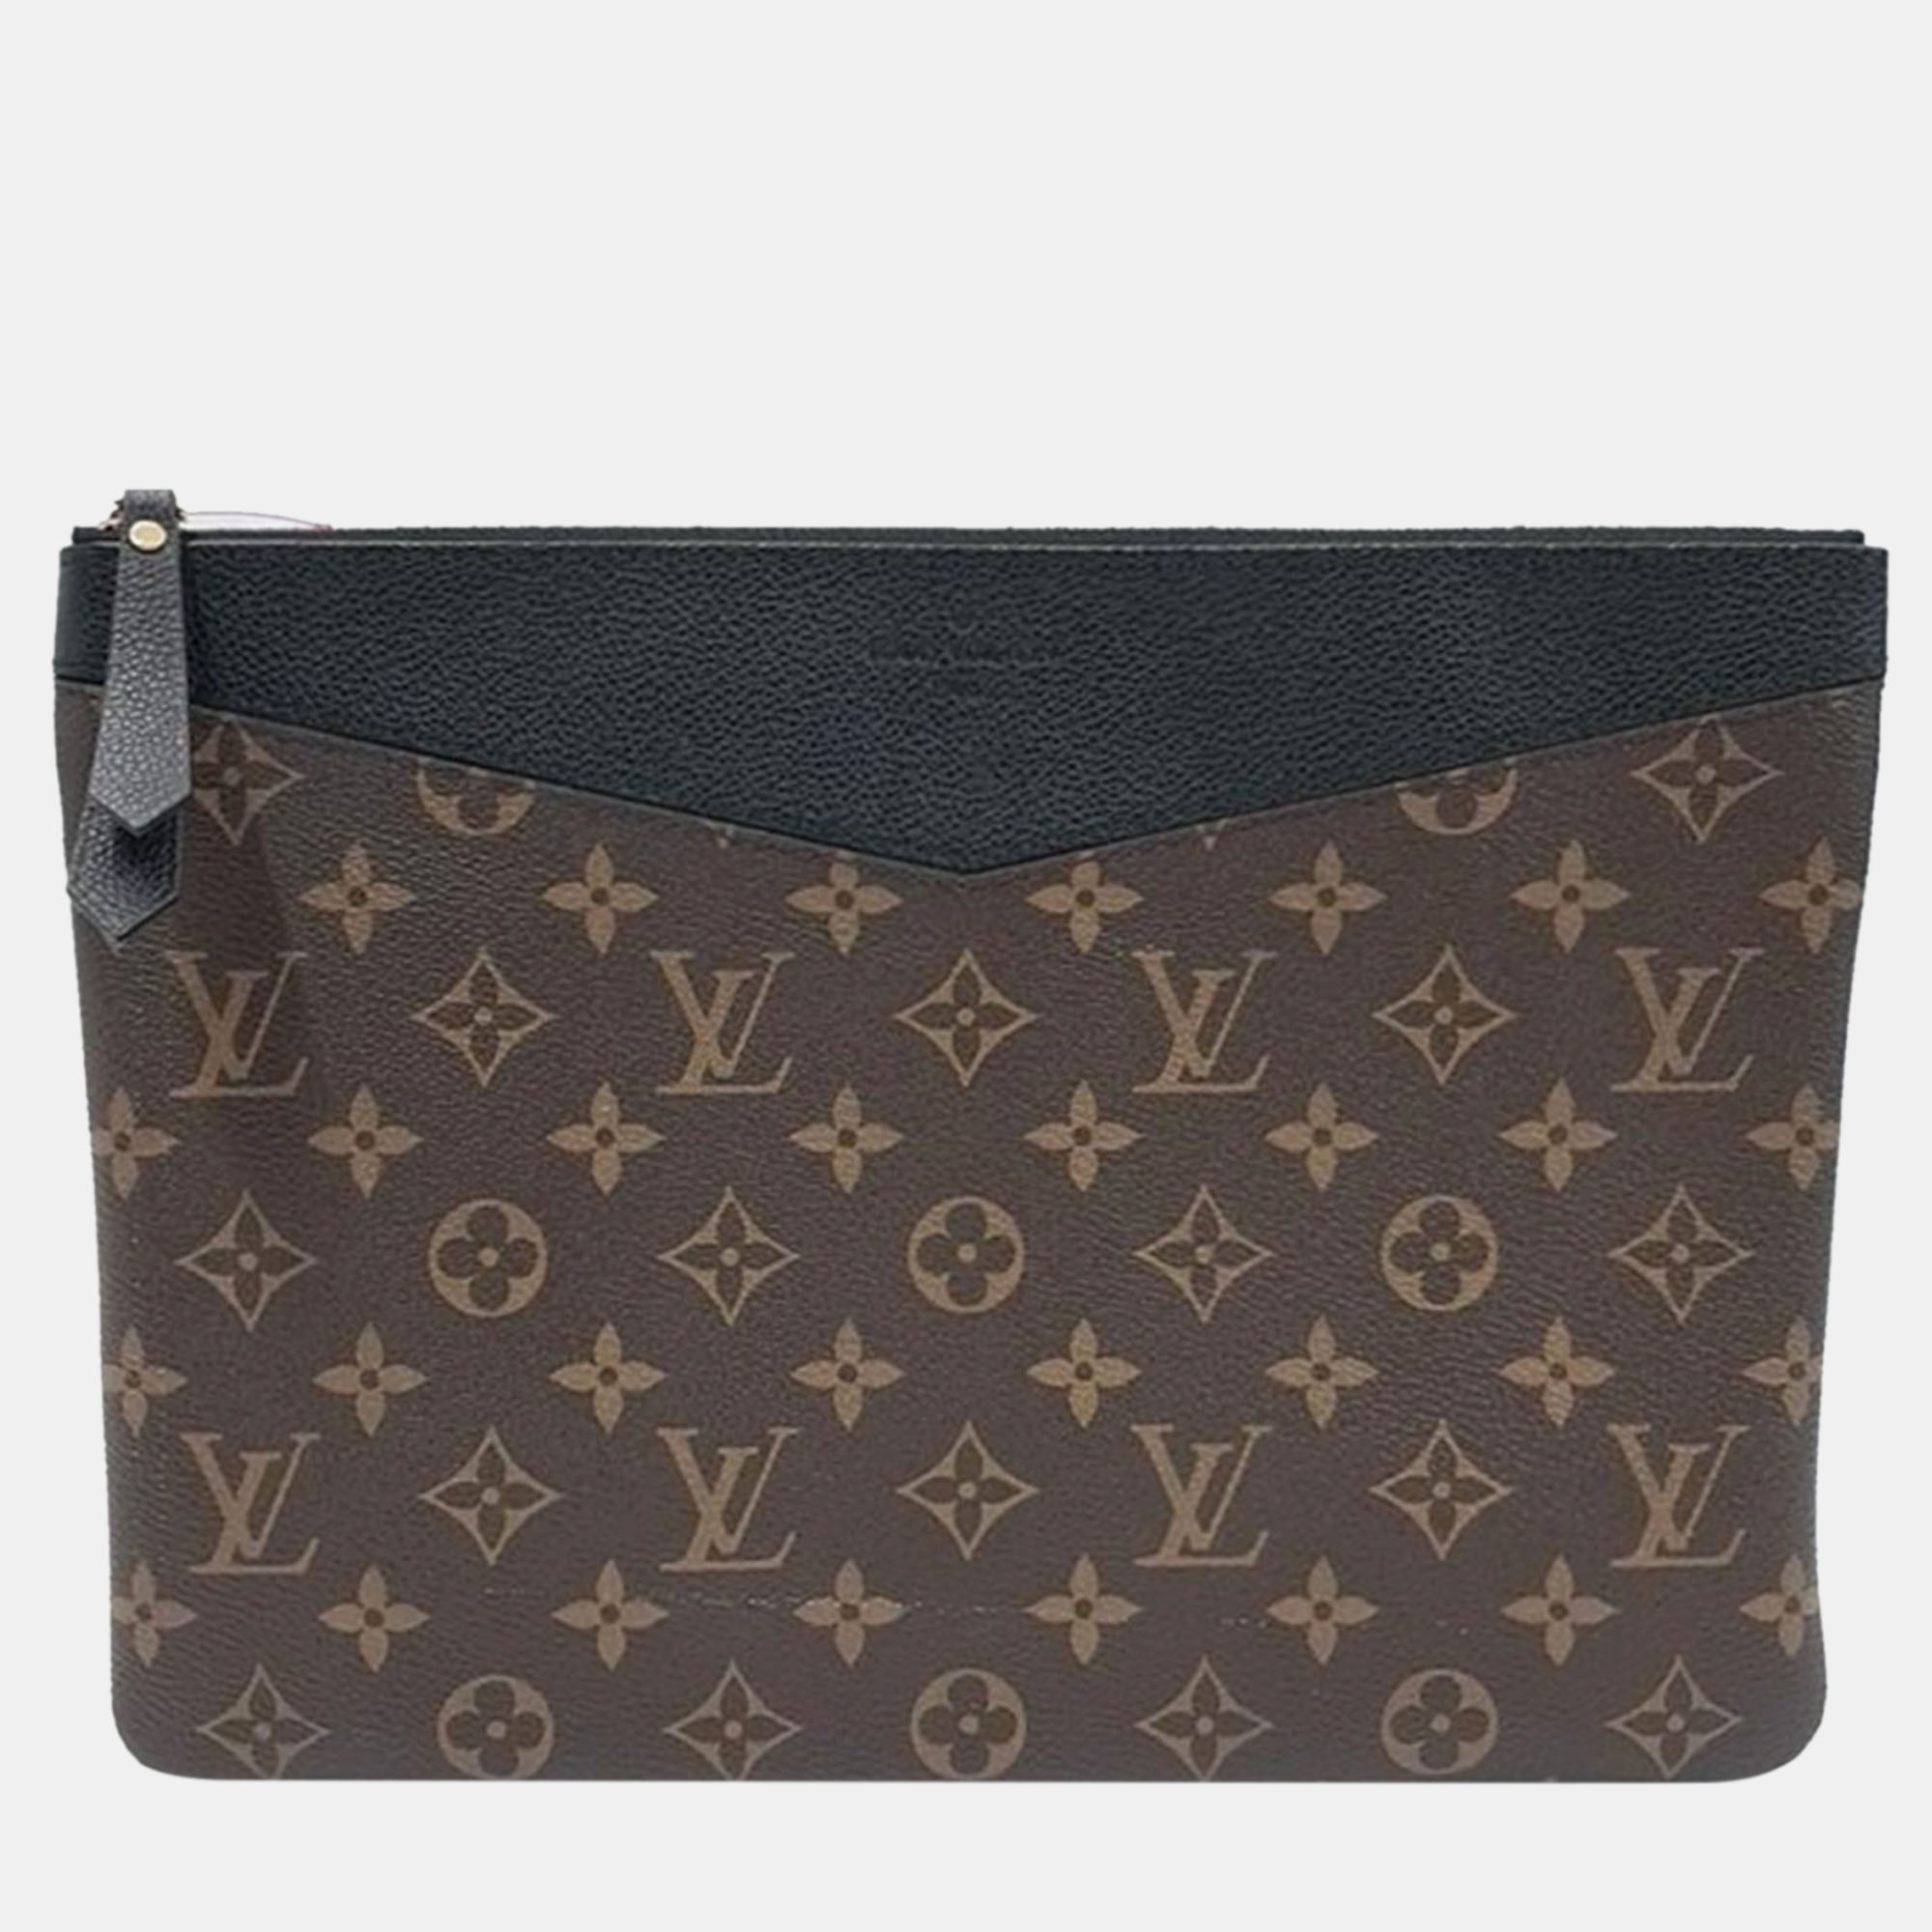 

Louis Vuitton Daily Clutch Bag, Brown